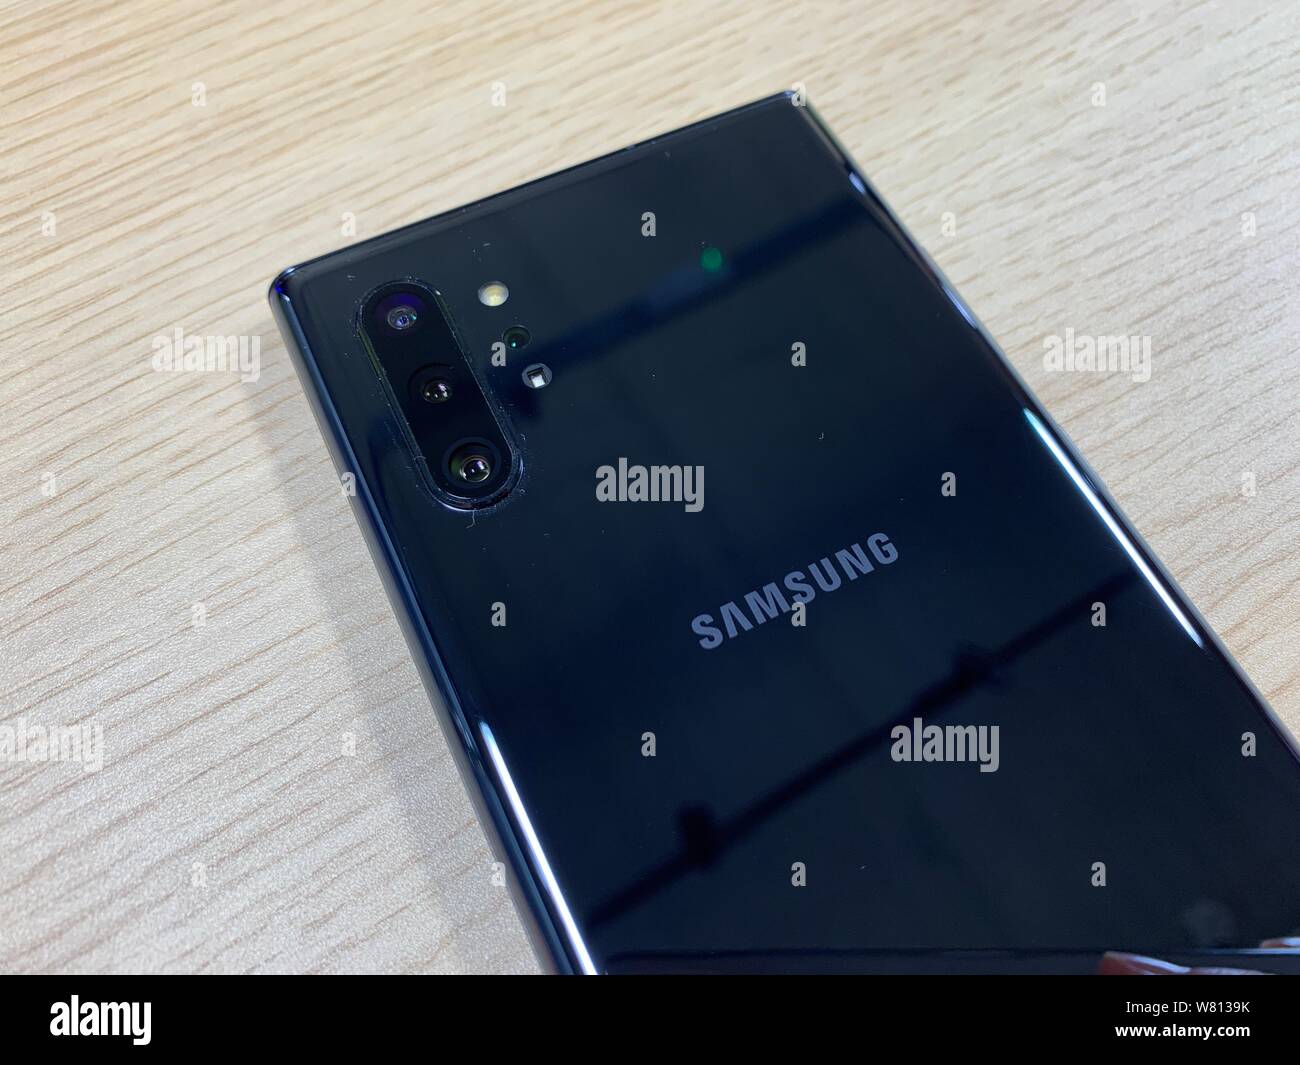 Der Samsung Anmerkung 10 + Smartphone, die zusammen mit der Anmerkung 10 Bei einer live Samsung Ereignis in New York am Mittwoch Abend vorgestellt wurde. Stockfoto